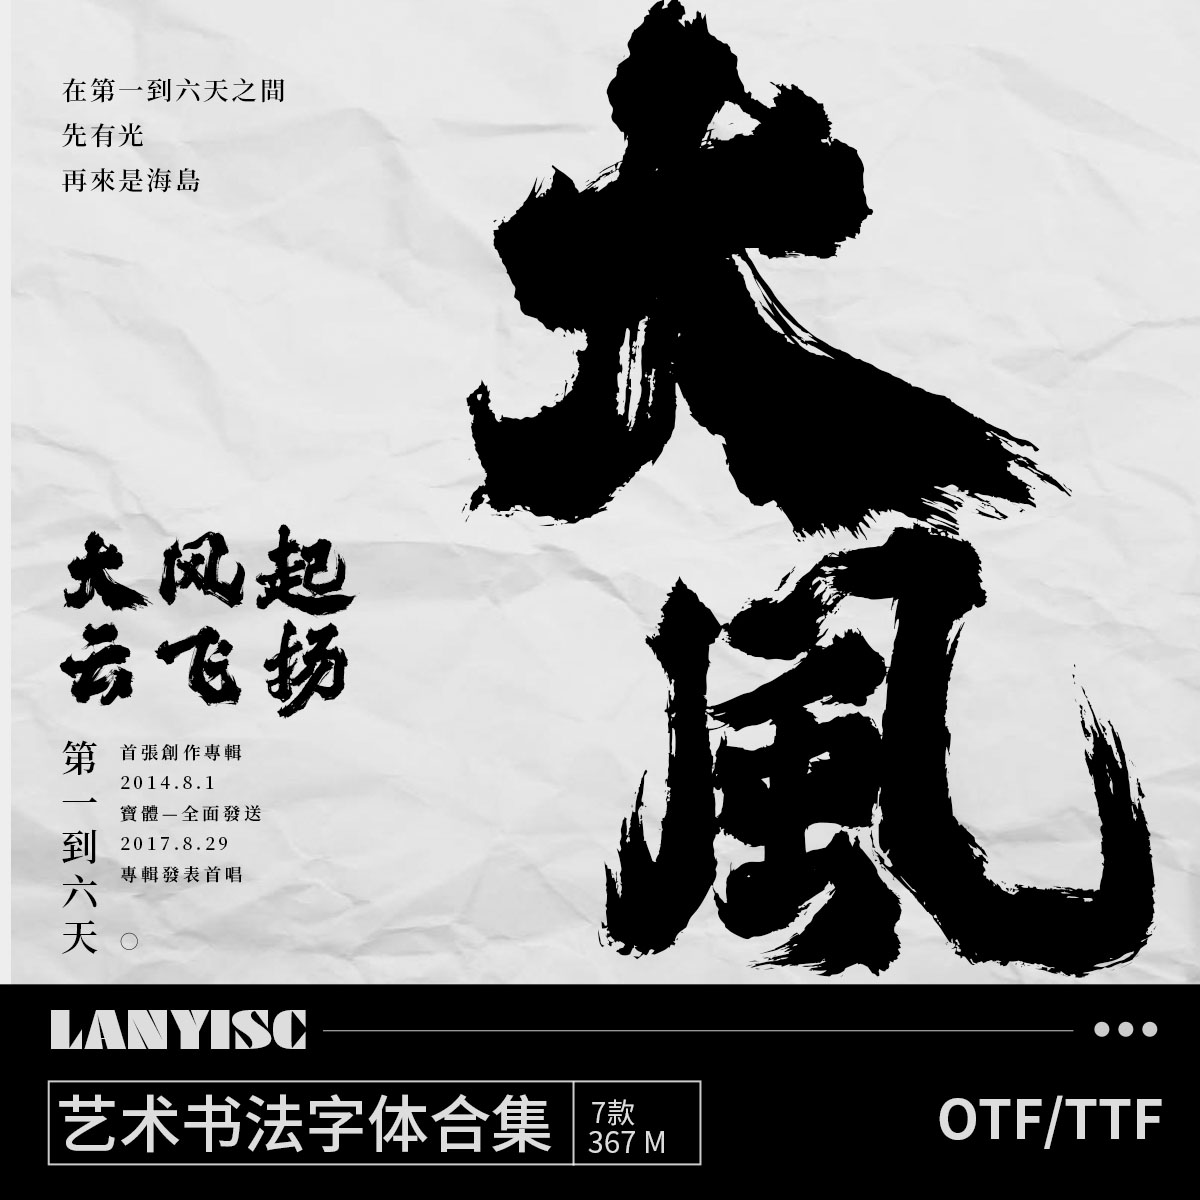 中文书法艺术文艺字体包下载古风视频剪辑procreate ps字体素材